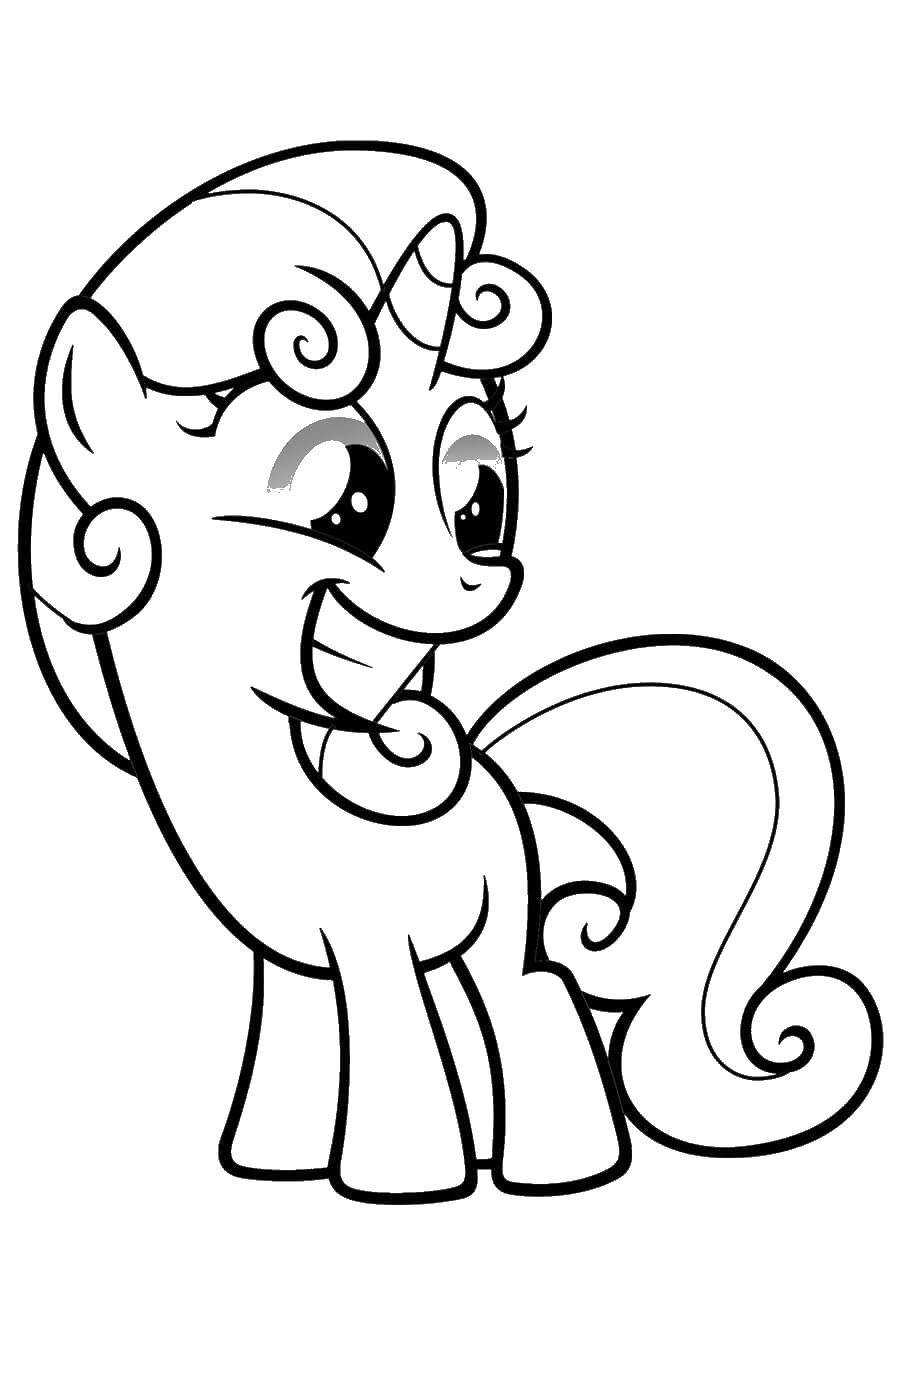 Название: Раскраска Счастливый пони. Категория: Пони. Теги: Пони, "My little pony".